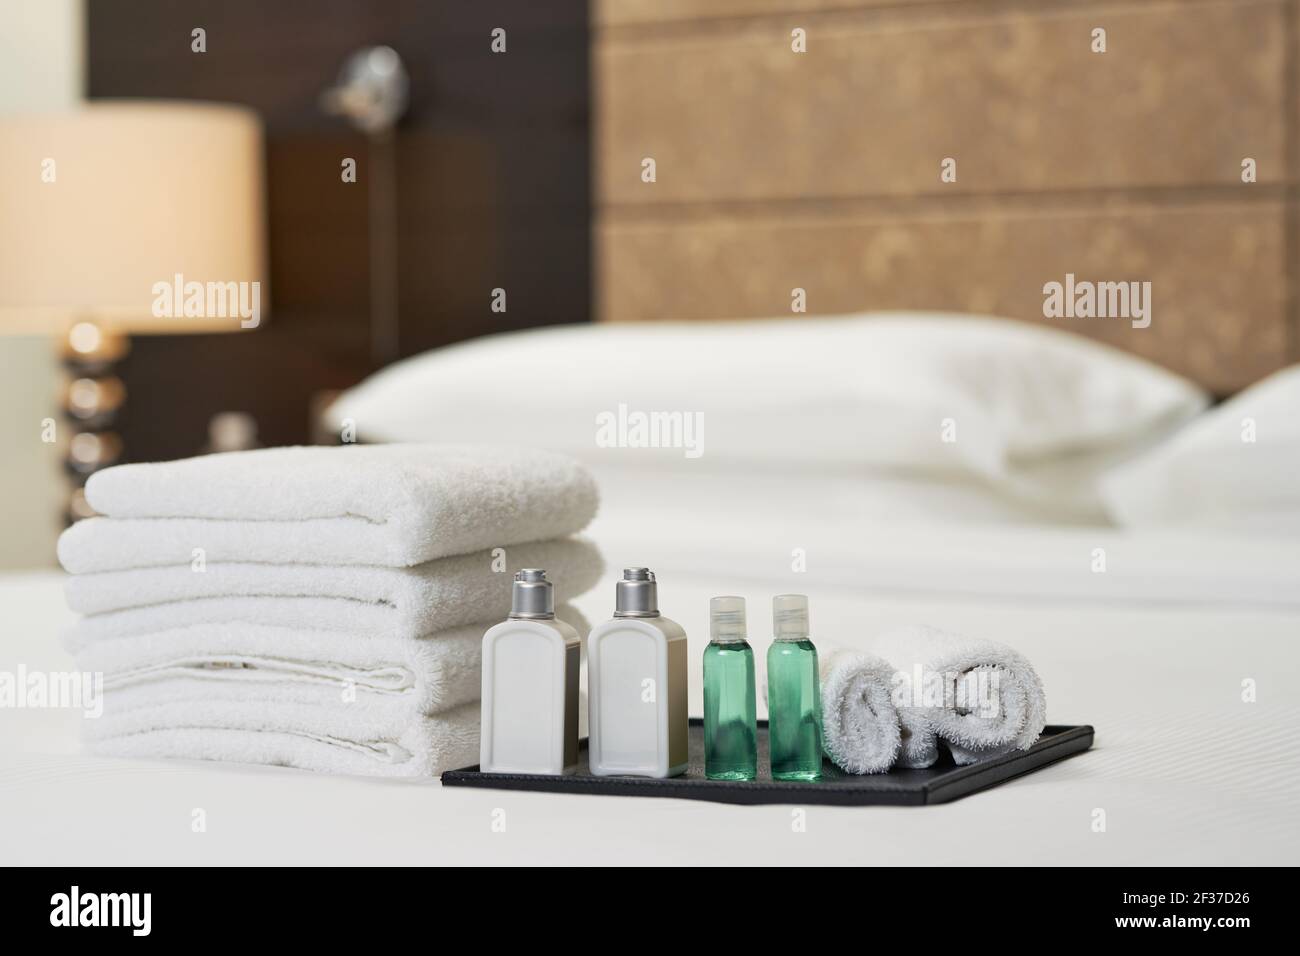 Flüssiges Shampoo und Duschgel neben Handtüchern auf dem Bett Stockfoto